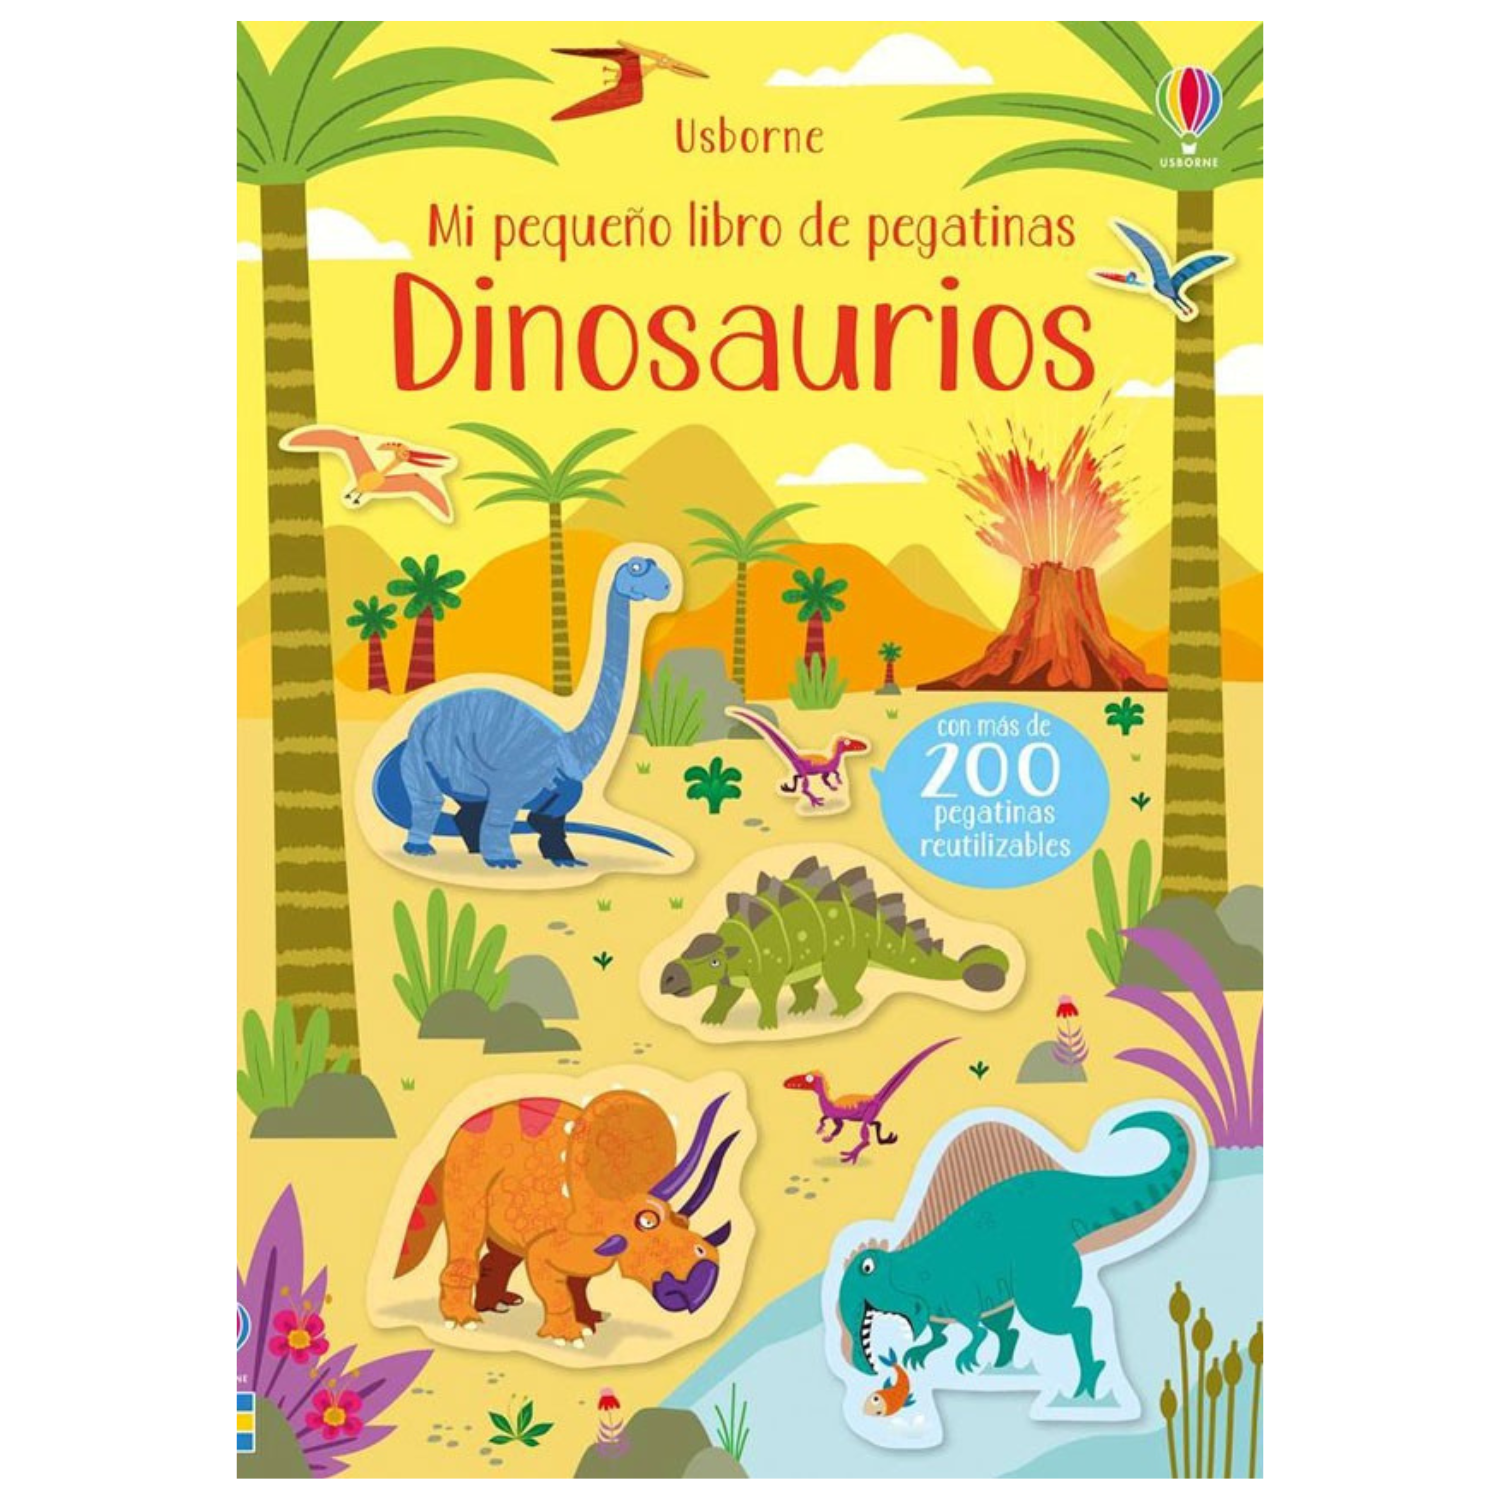 Dinosaurios - Mi pequeño libro de pegatinas